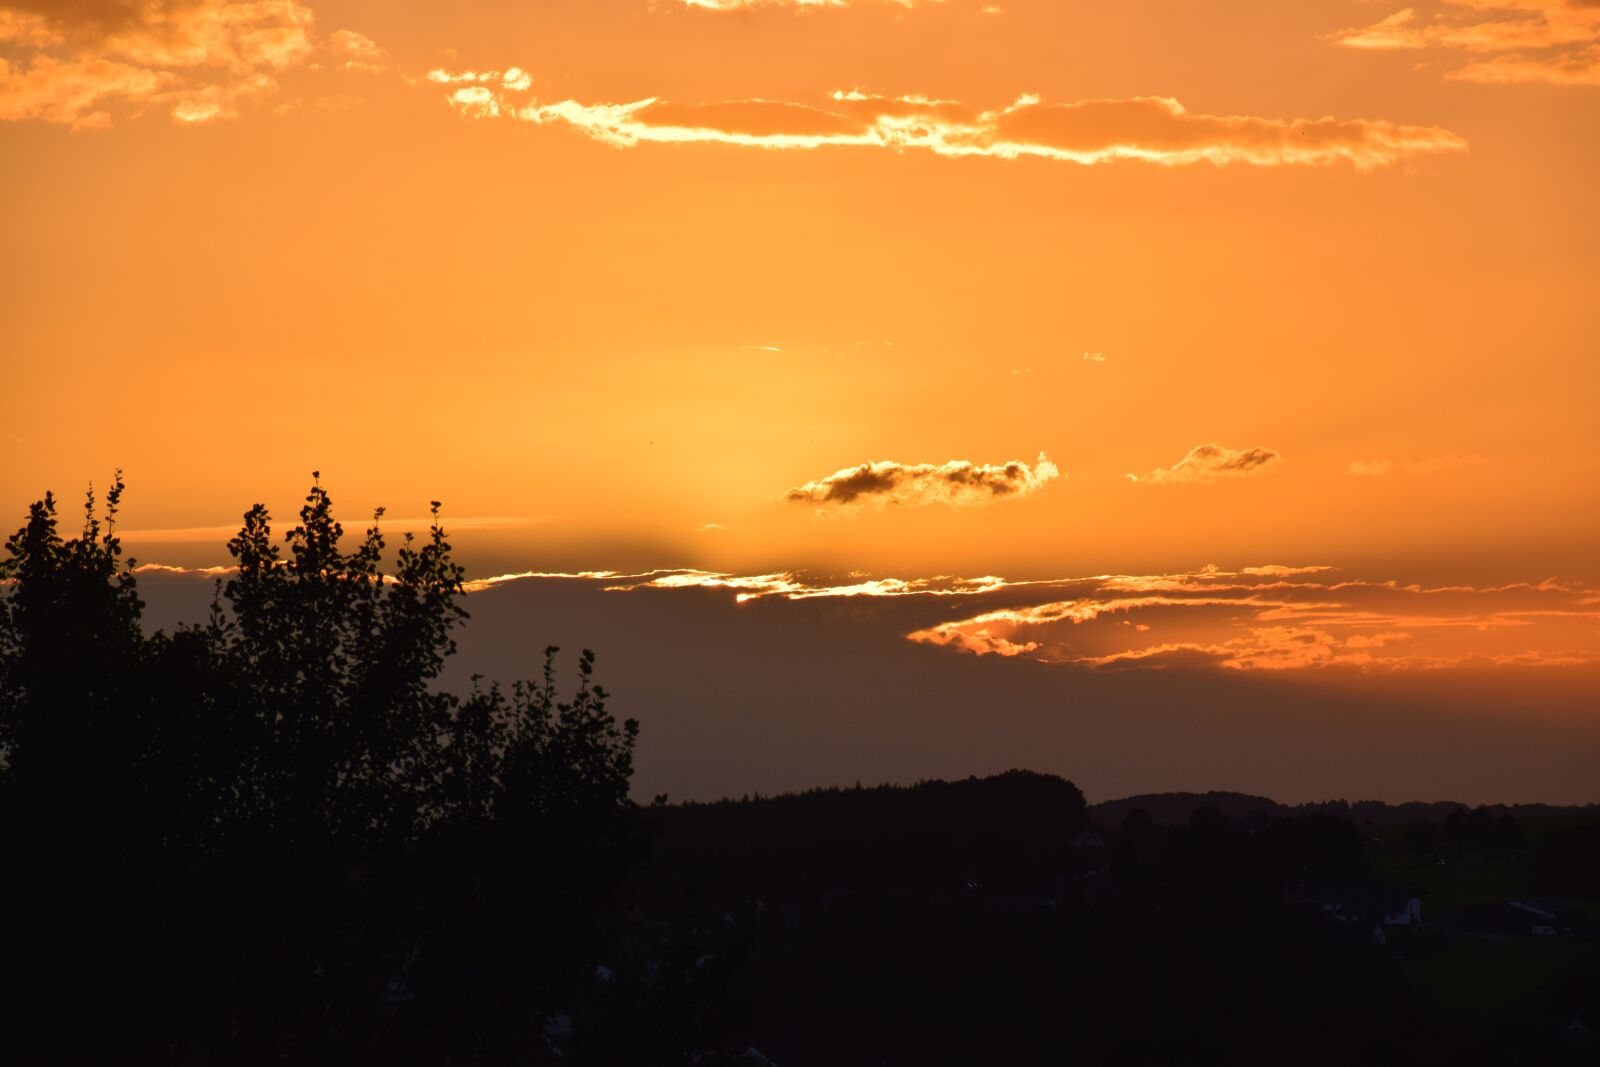 Nikon D5300 sample photo. Sunset, clouds, evening sky photography